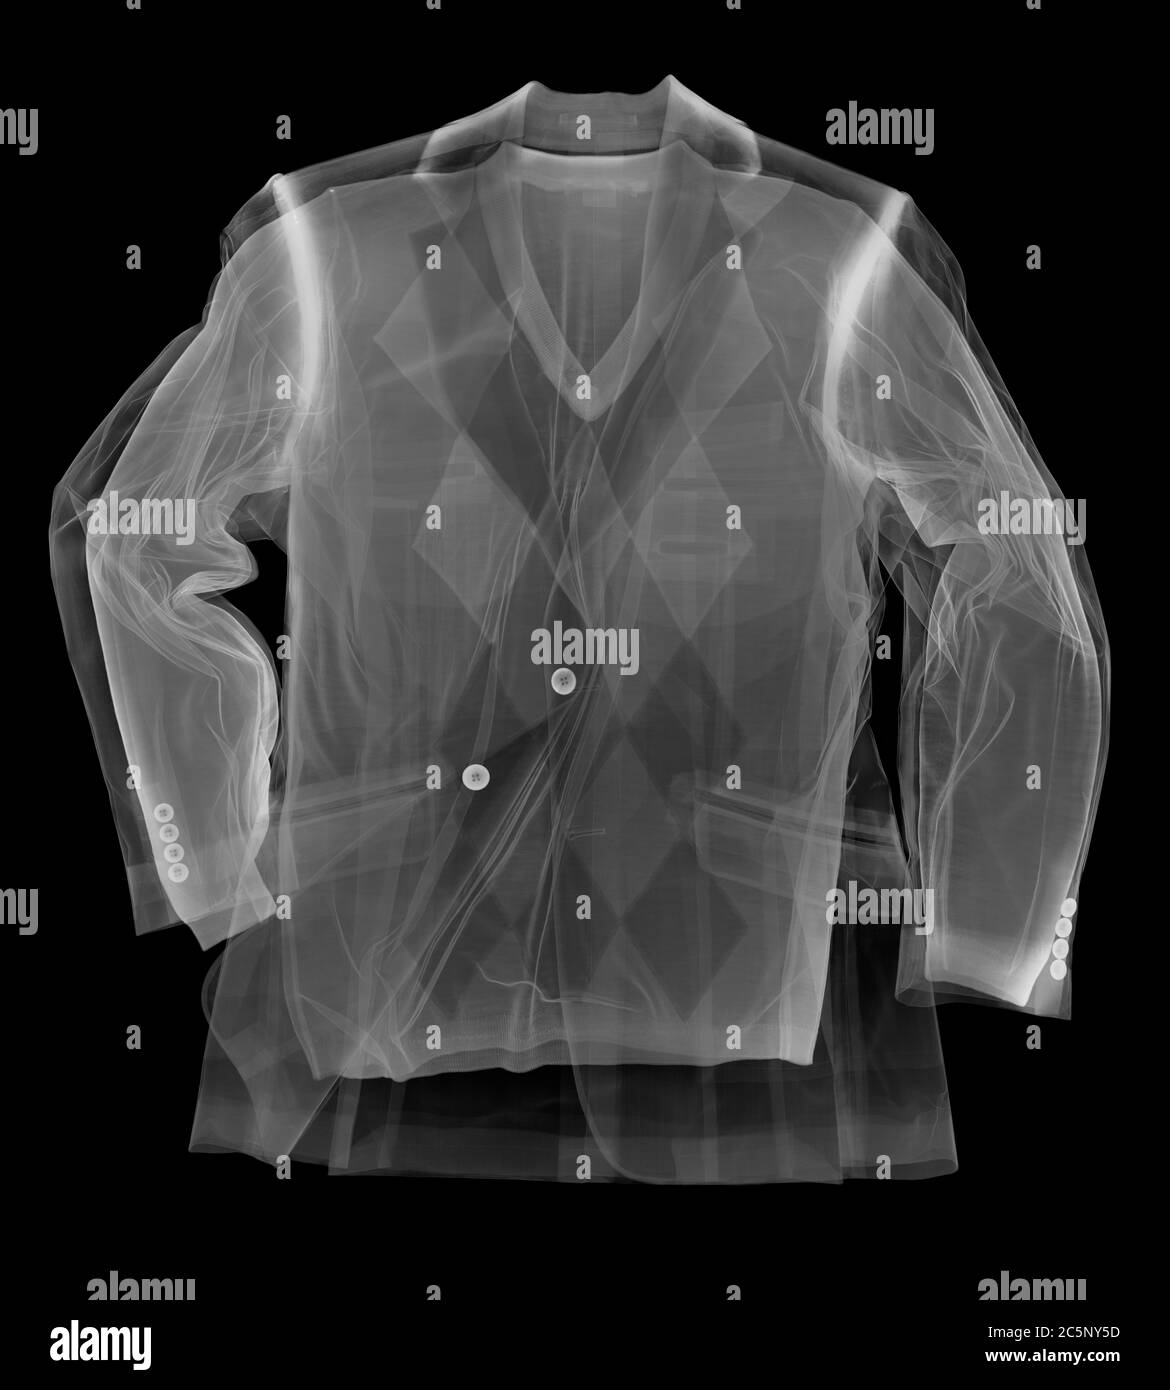 Jersey y chaqueta, rayos X. Foto de stock